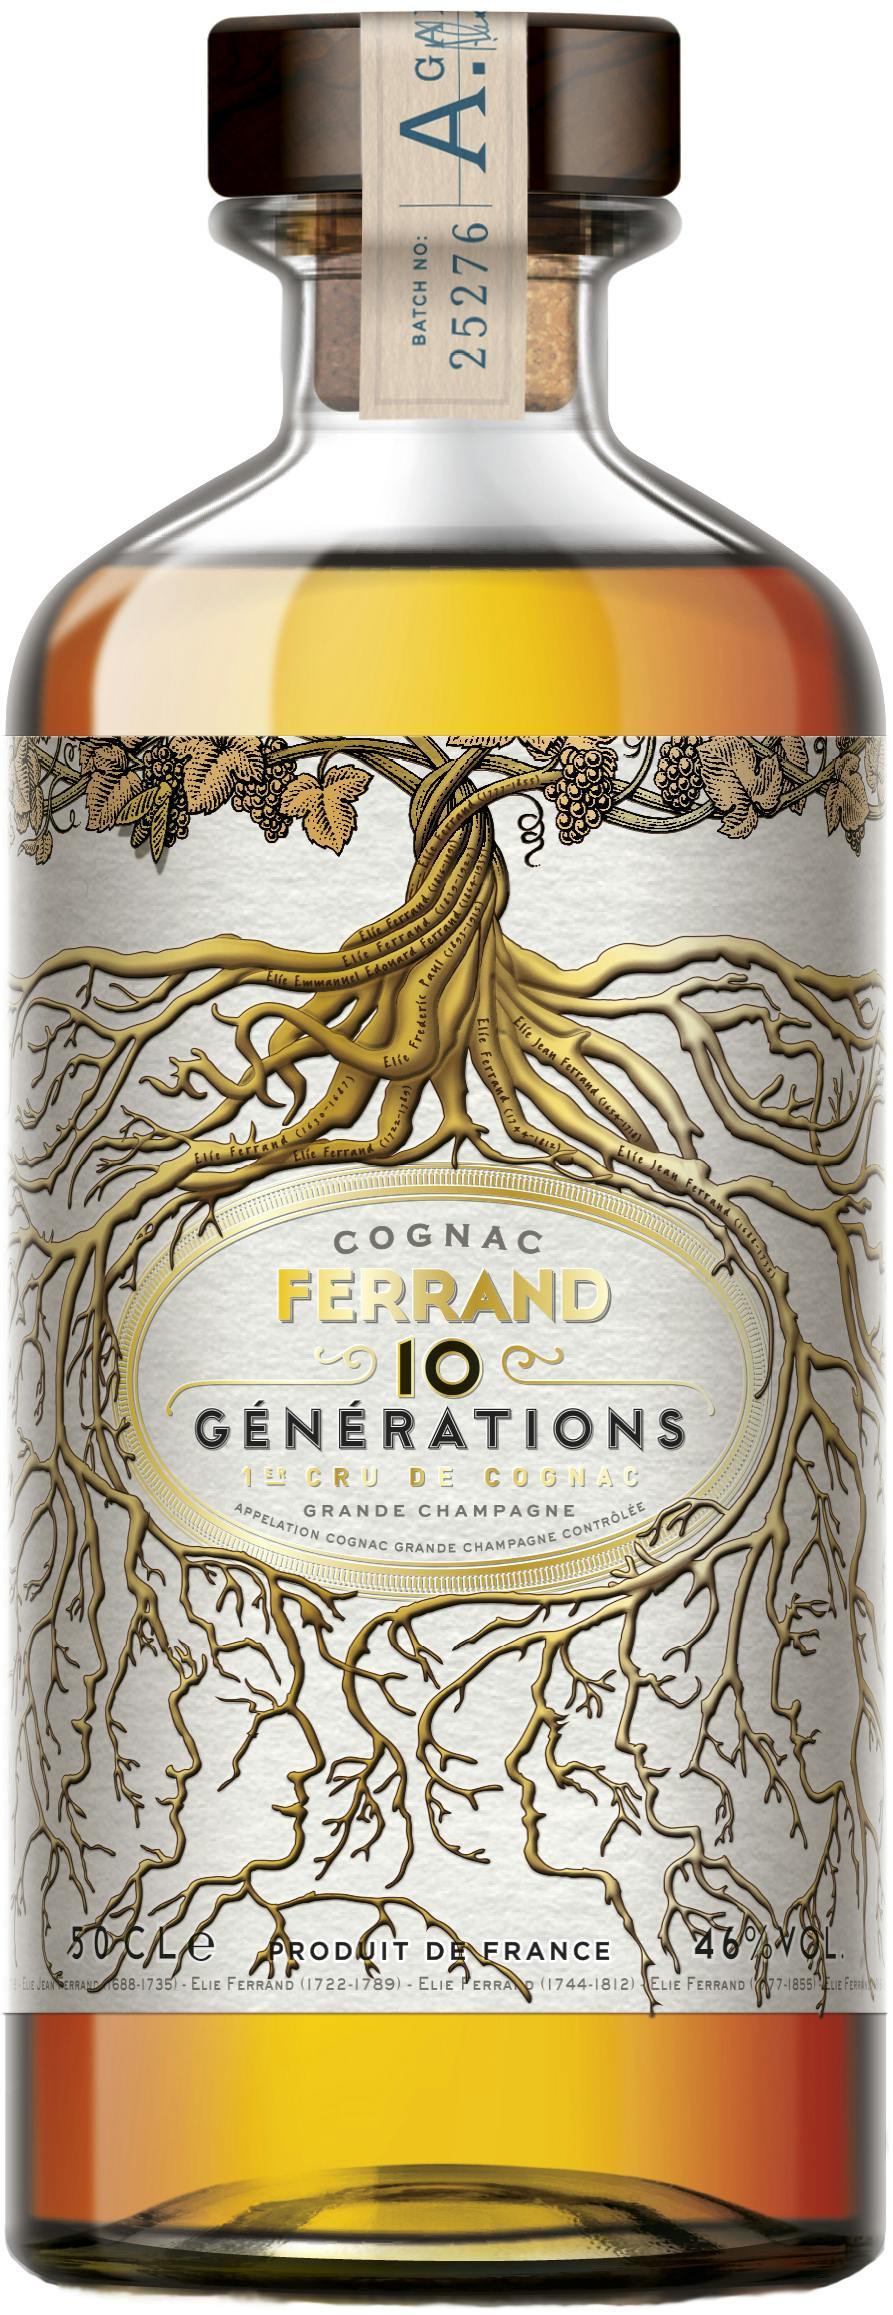 pierre-ferrand-10-generations-1-er-cru-de-cognac-grande-champagne-05